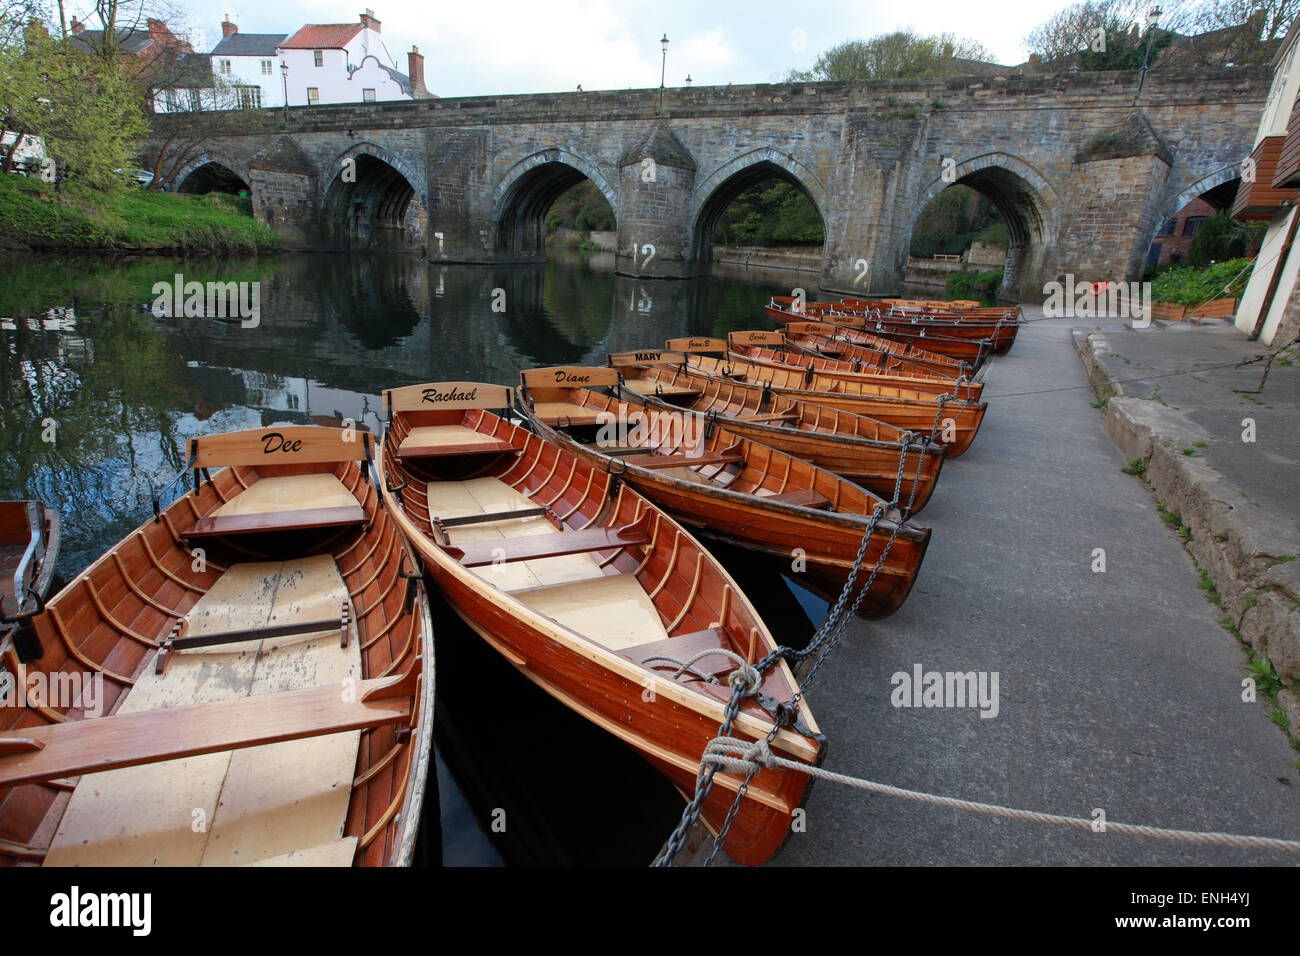 La tradizione di legno barche a remi sul fiume usura con Elvet Bridge in background in Durham Foto Stock